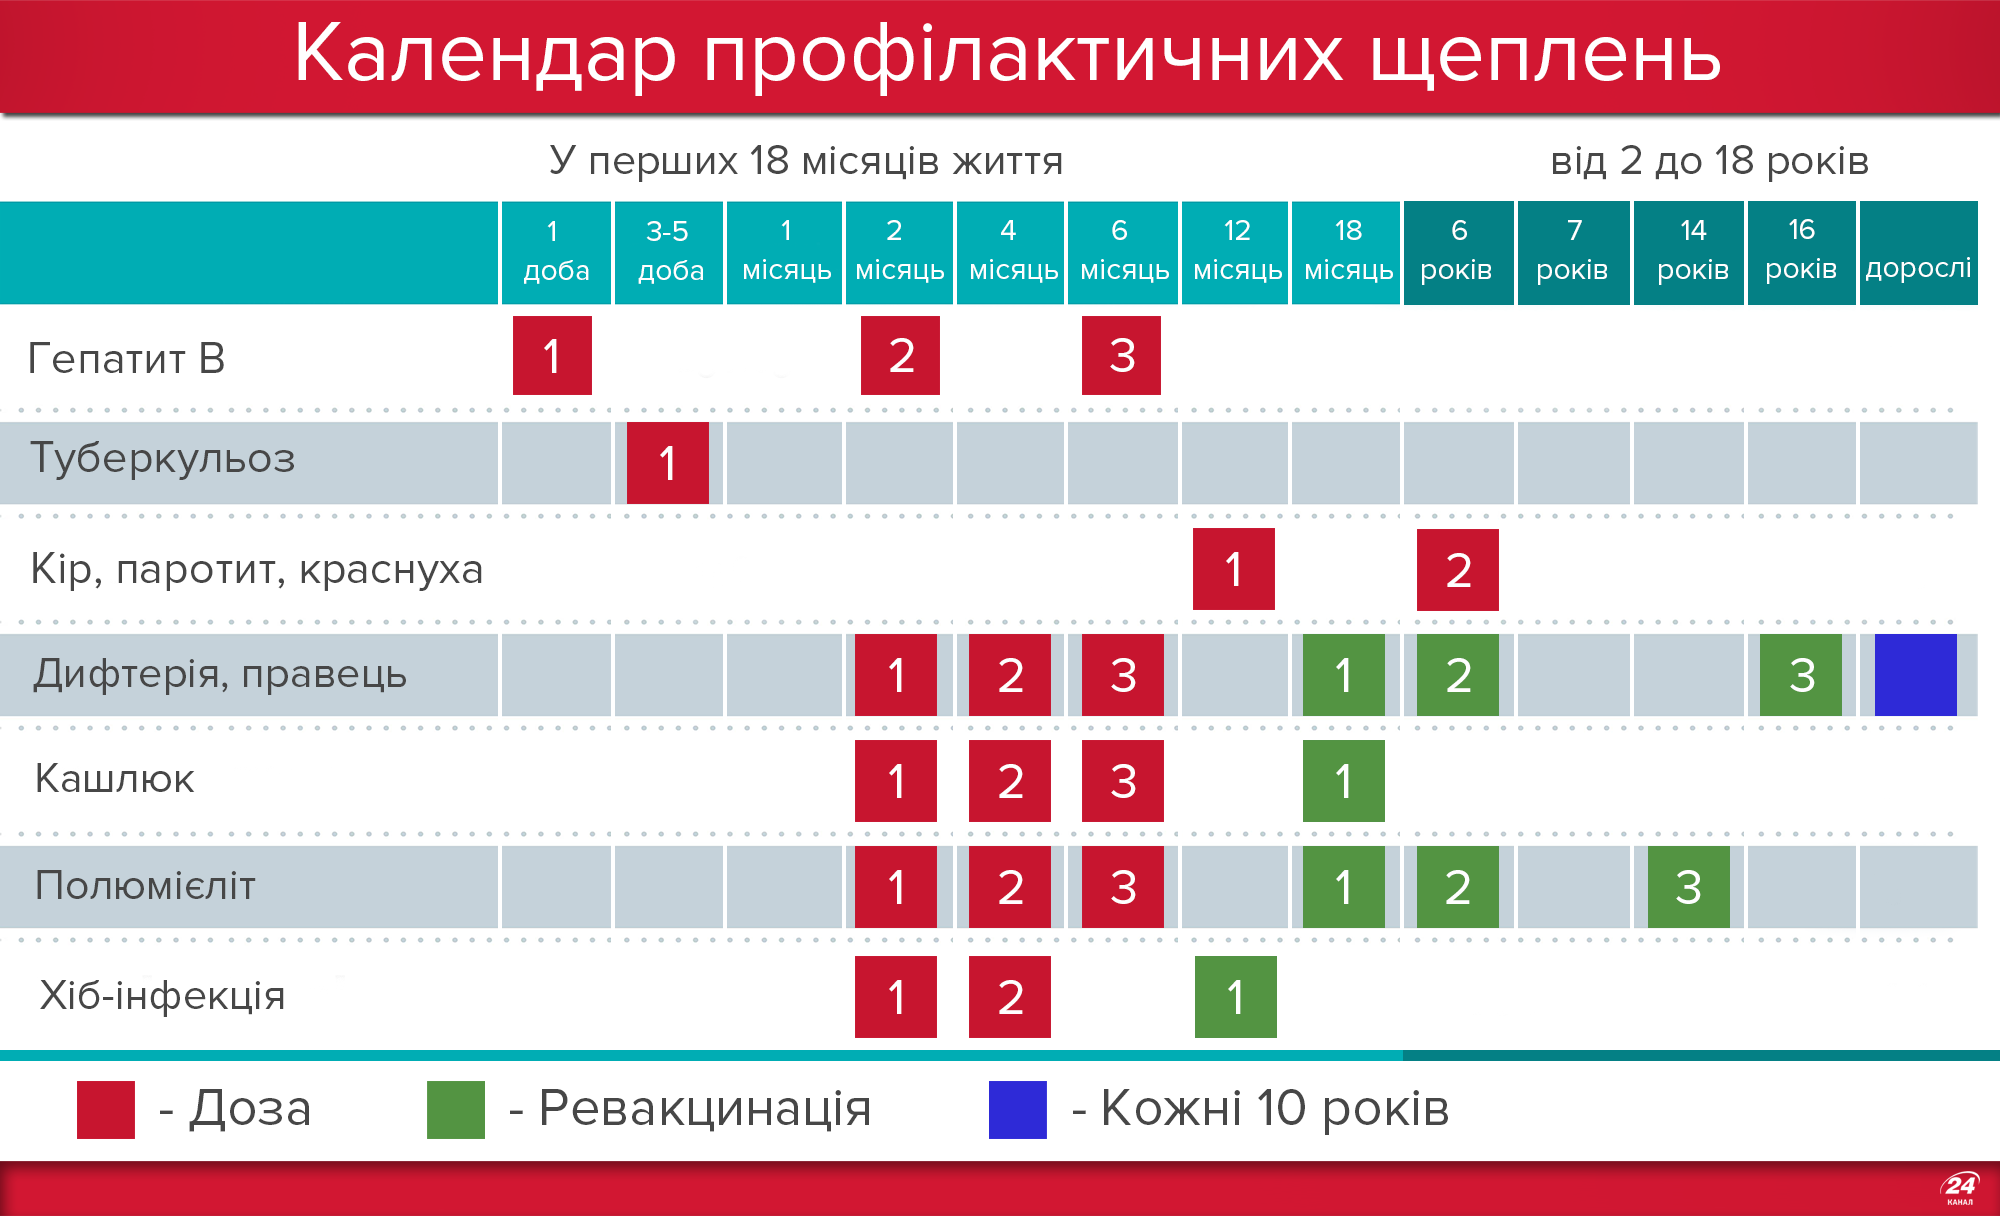 Календар щеплень в Україні